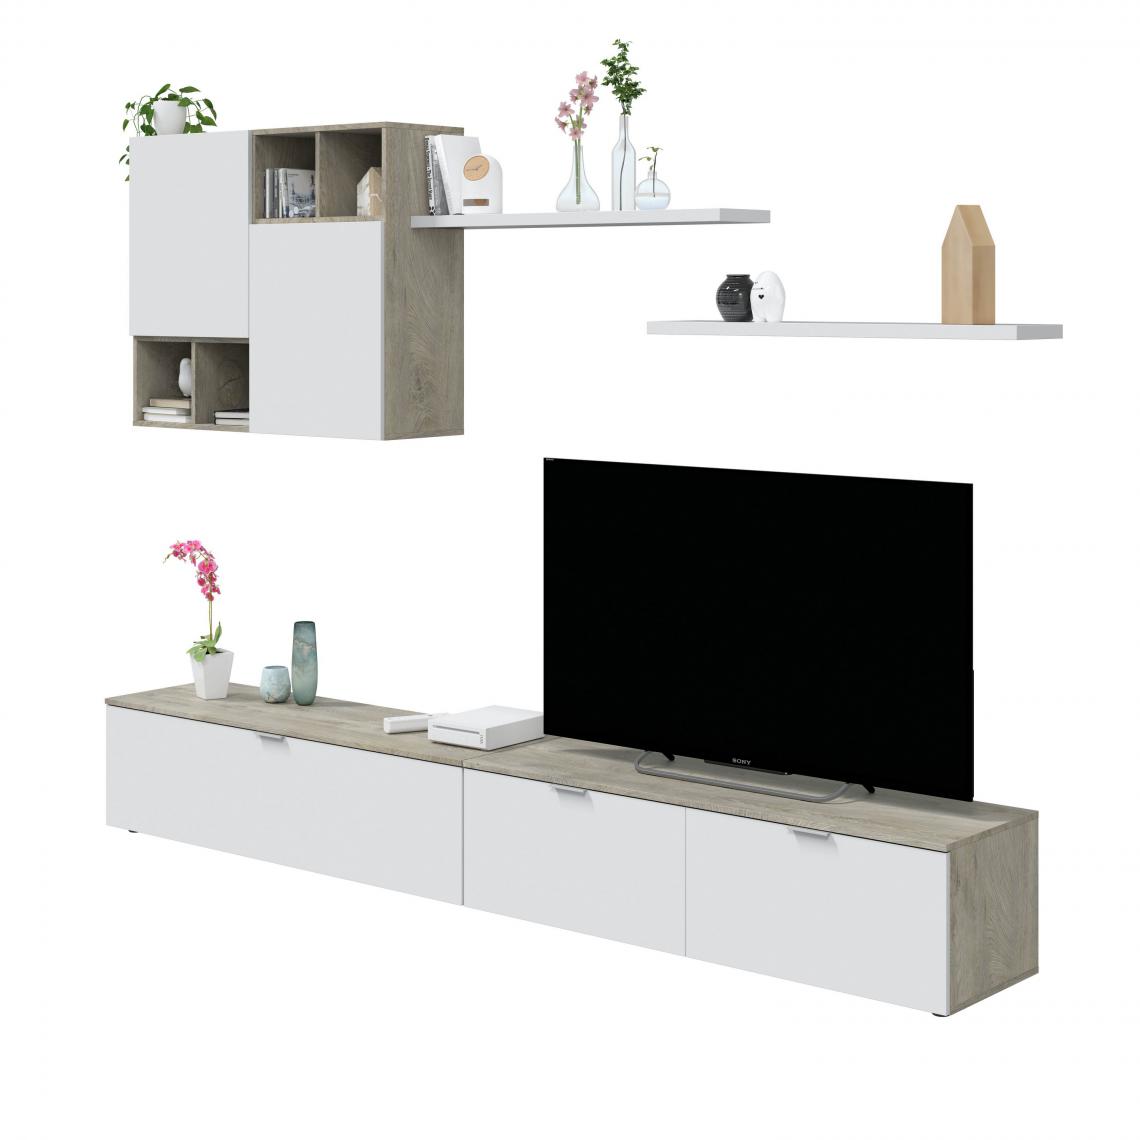 Alter - Système mural de salon, meuble TV blanc moderne, avec élément mural et étagères, 260 x 37 x 40 cm, couleur blanc et chêne - Meubles TV, Hi-Fi